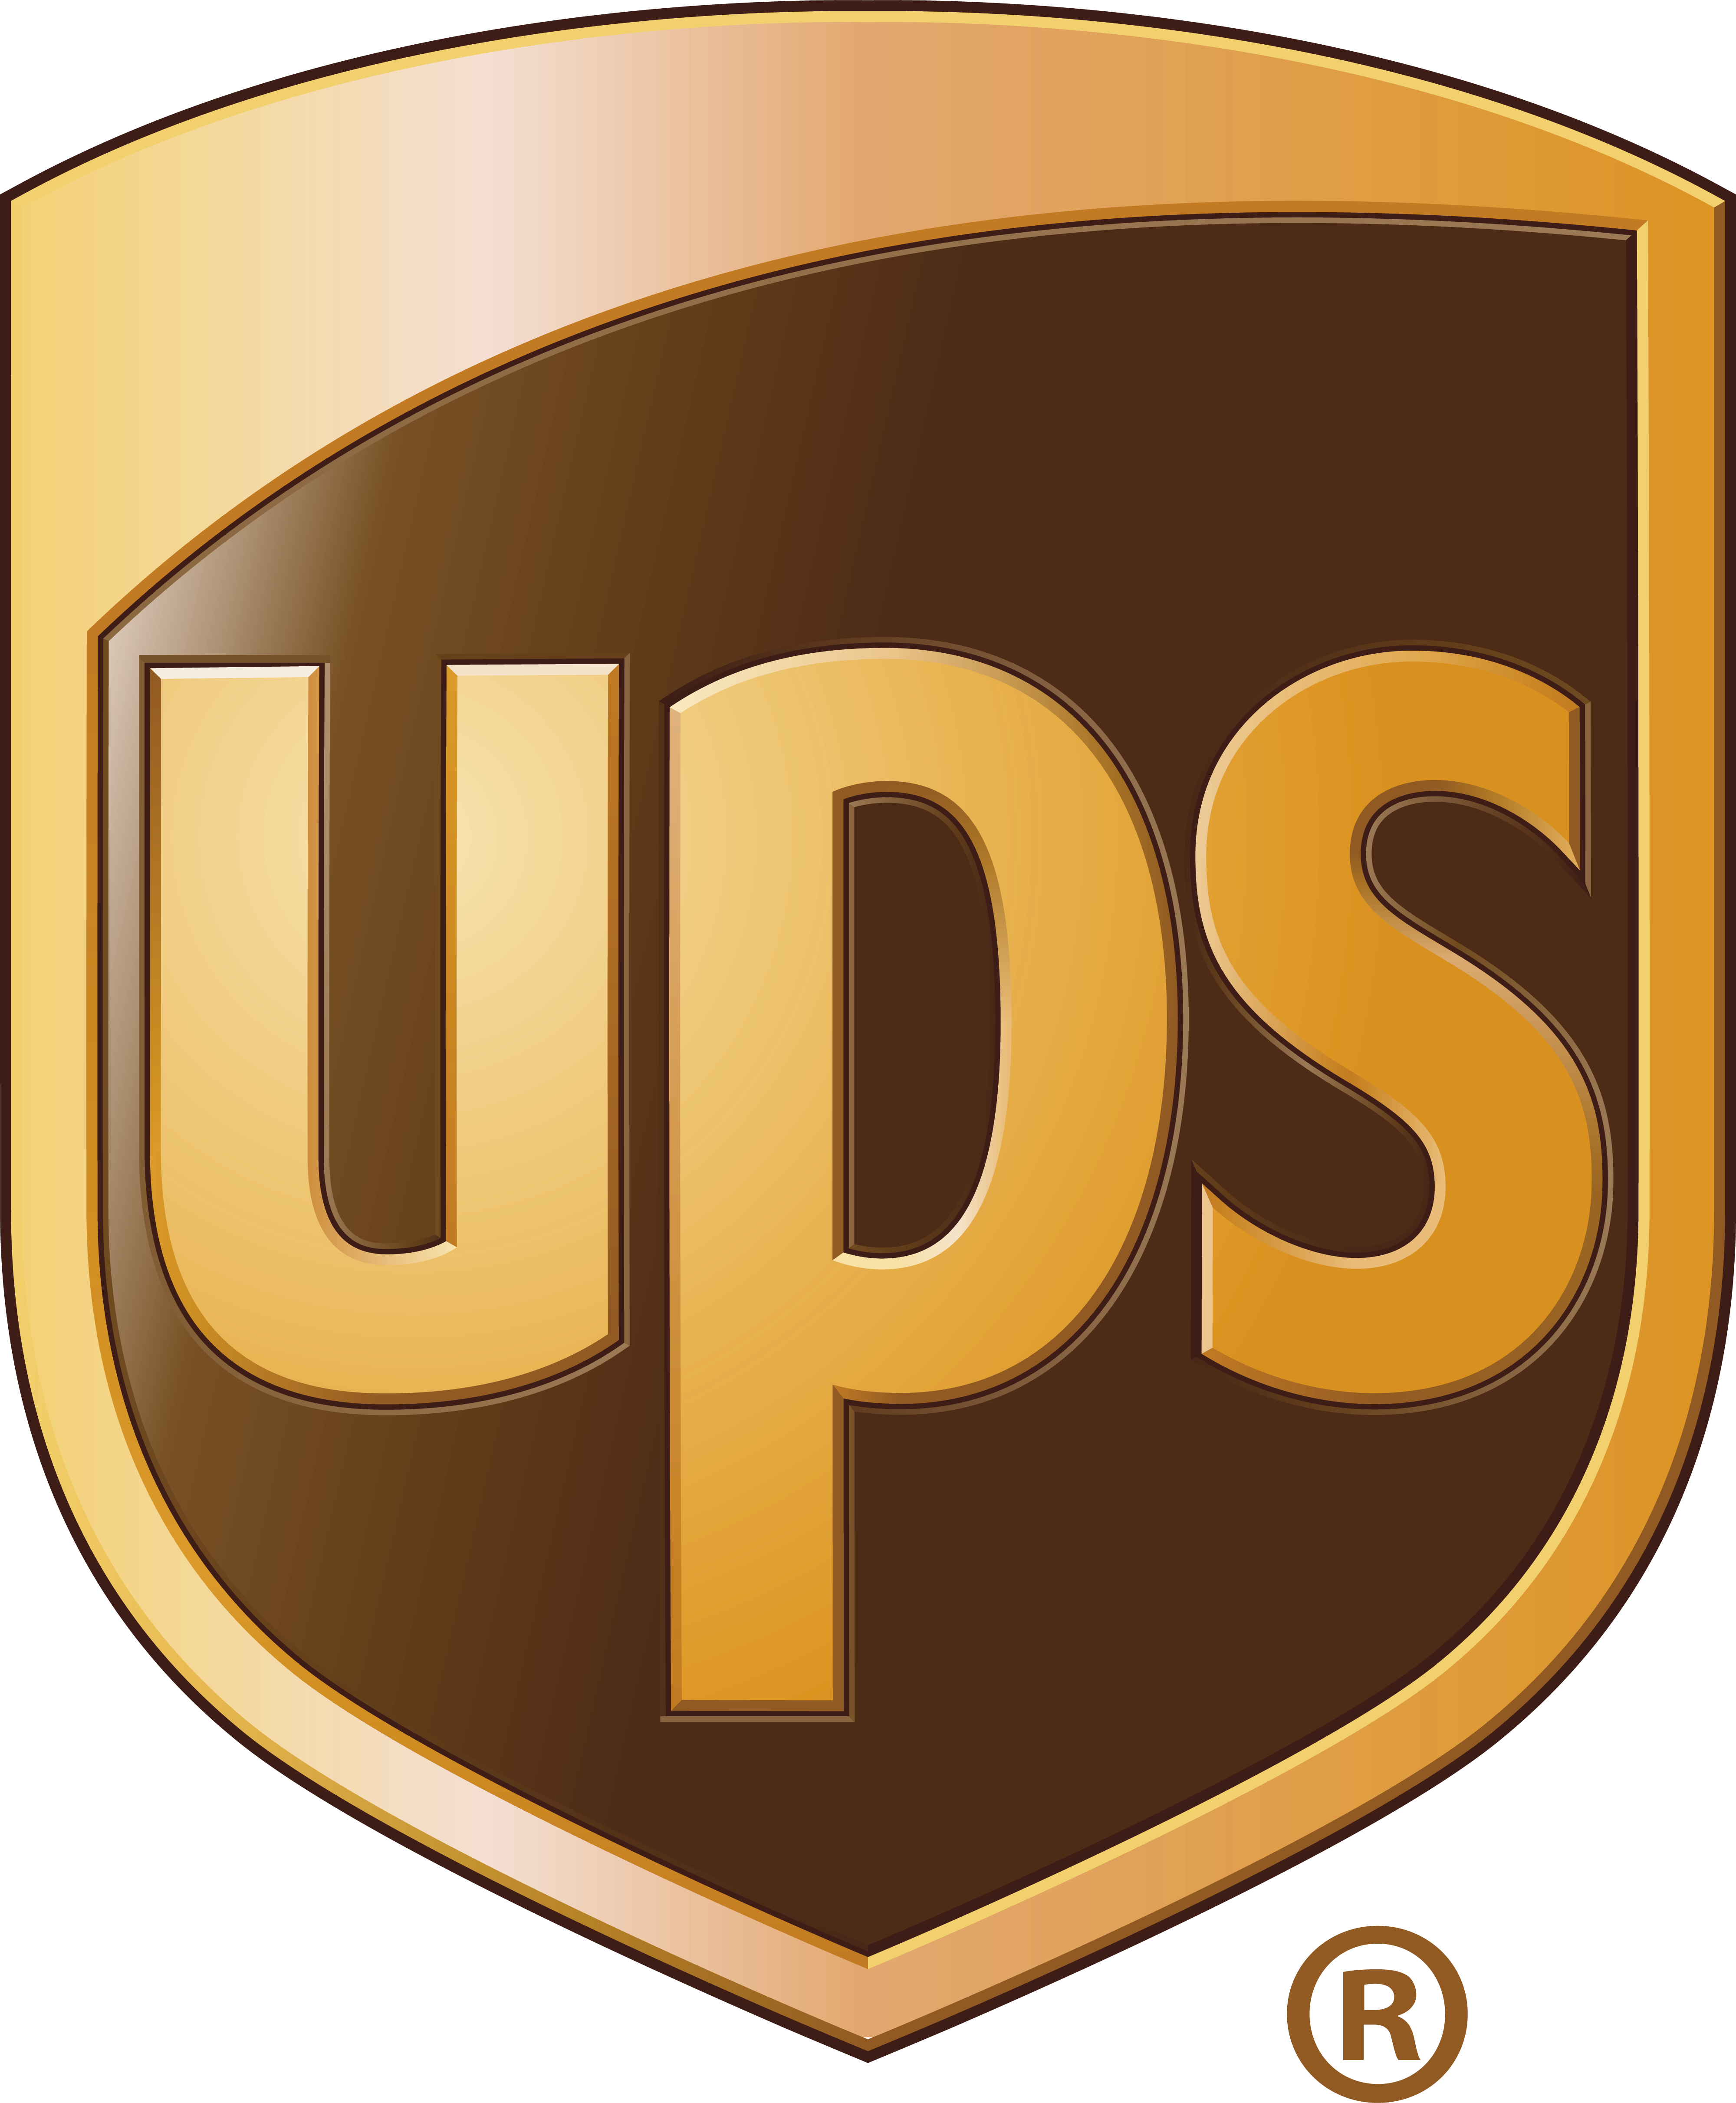 UPS United Parcel Service logo.